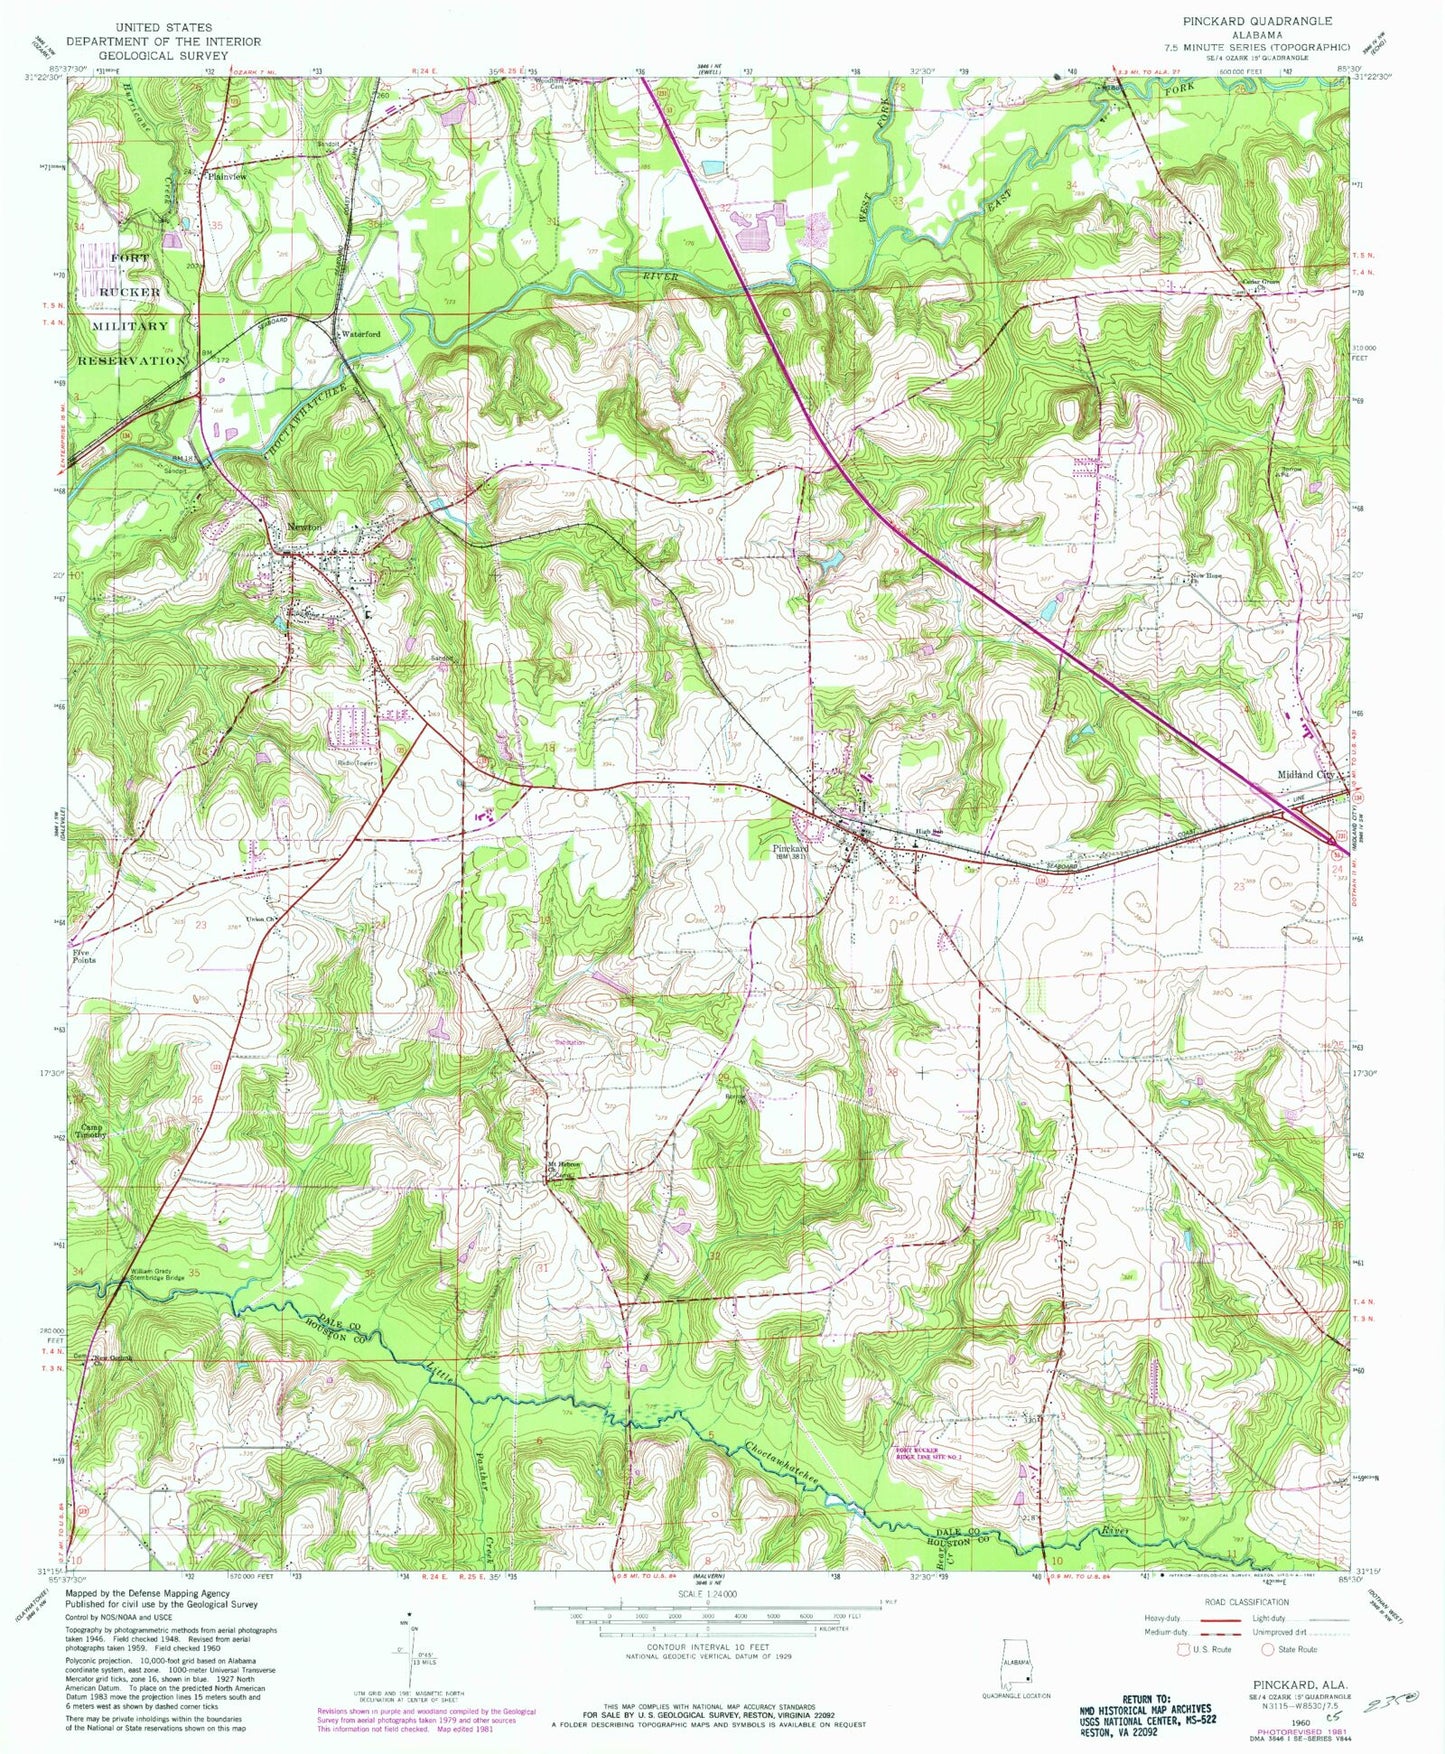 Classic USGS Pinckard Alabama 7.5'x7.5' Topo Map Image